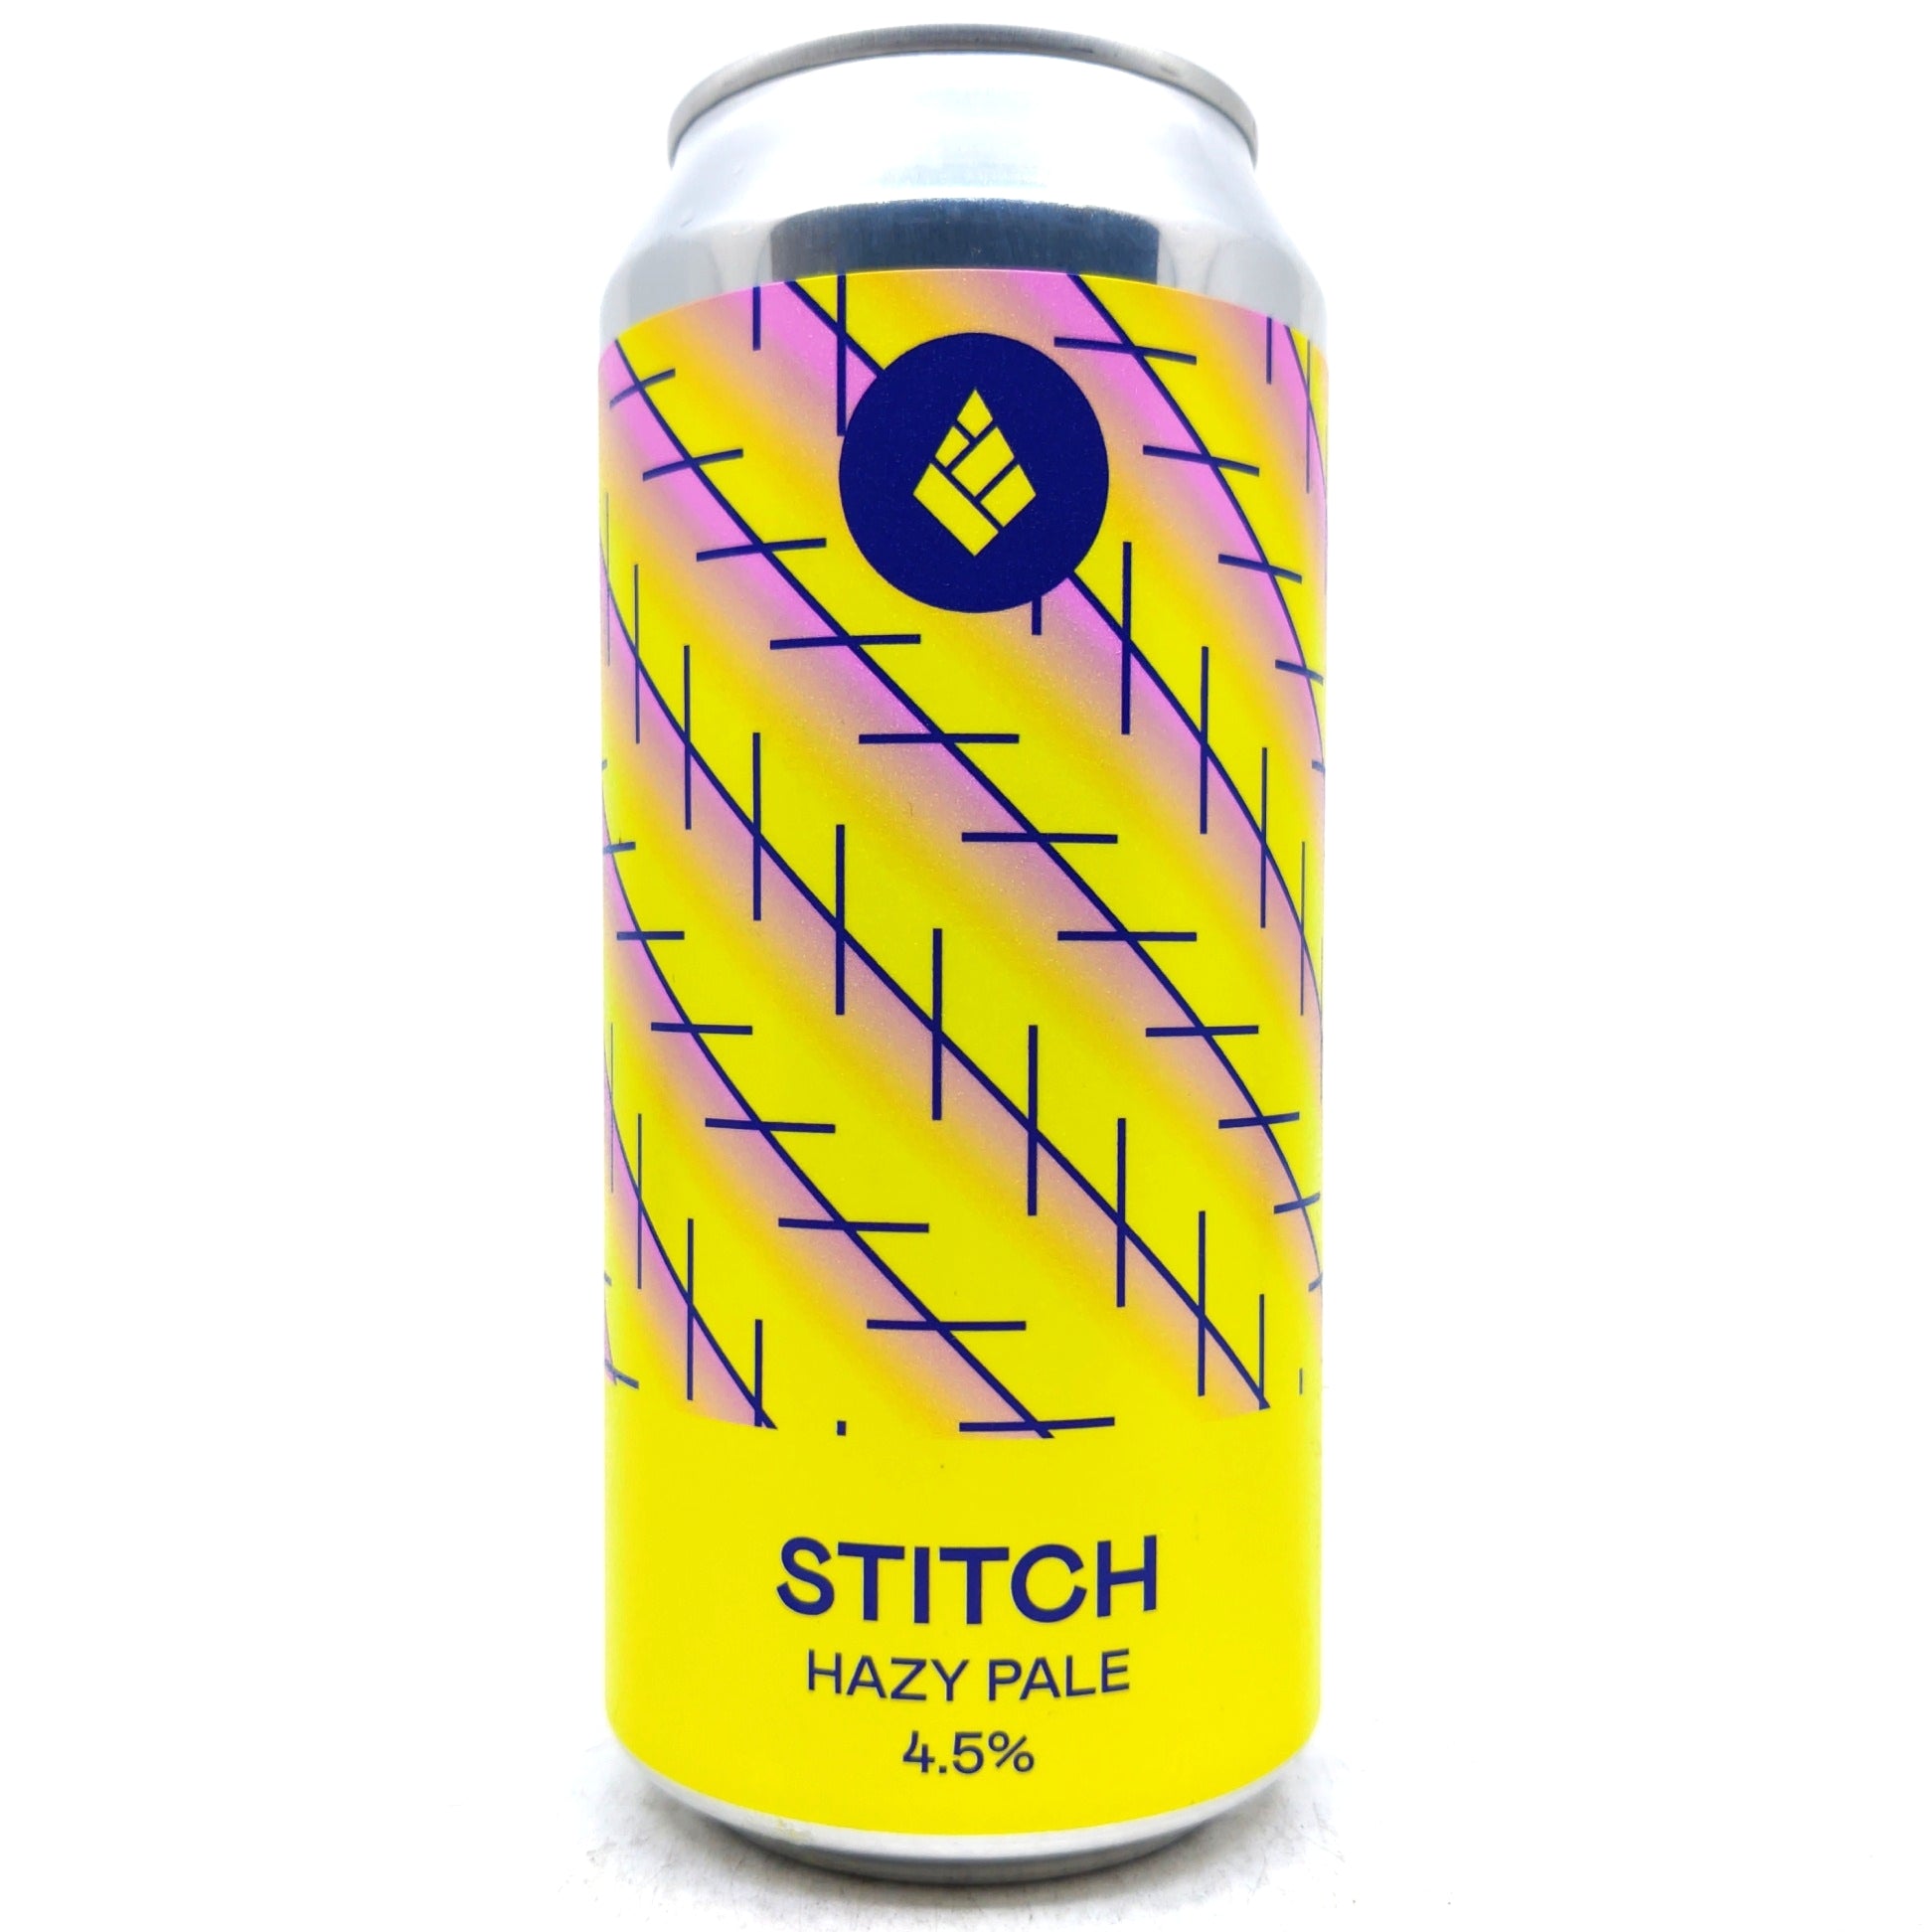 Drop Project Stitch Hazy Pale Ale 4.5% (440ml can)-Hop Burns & Black